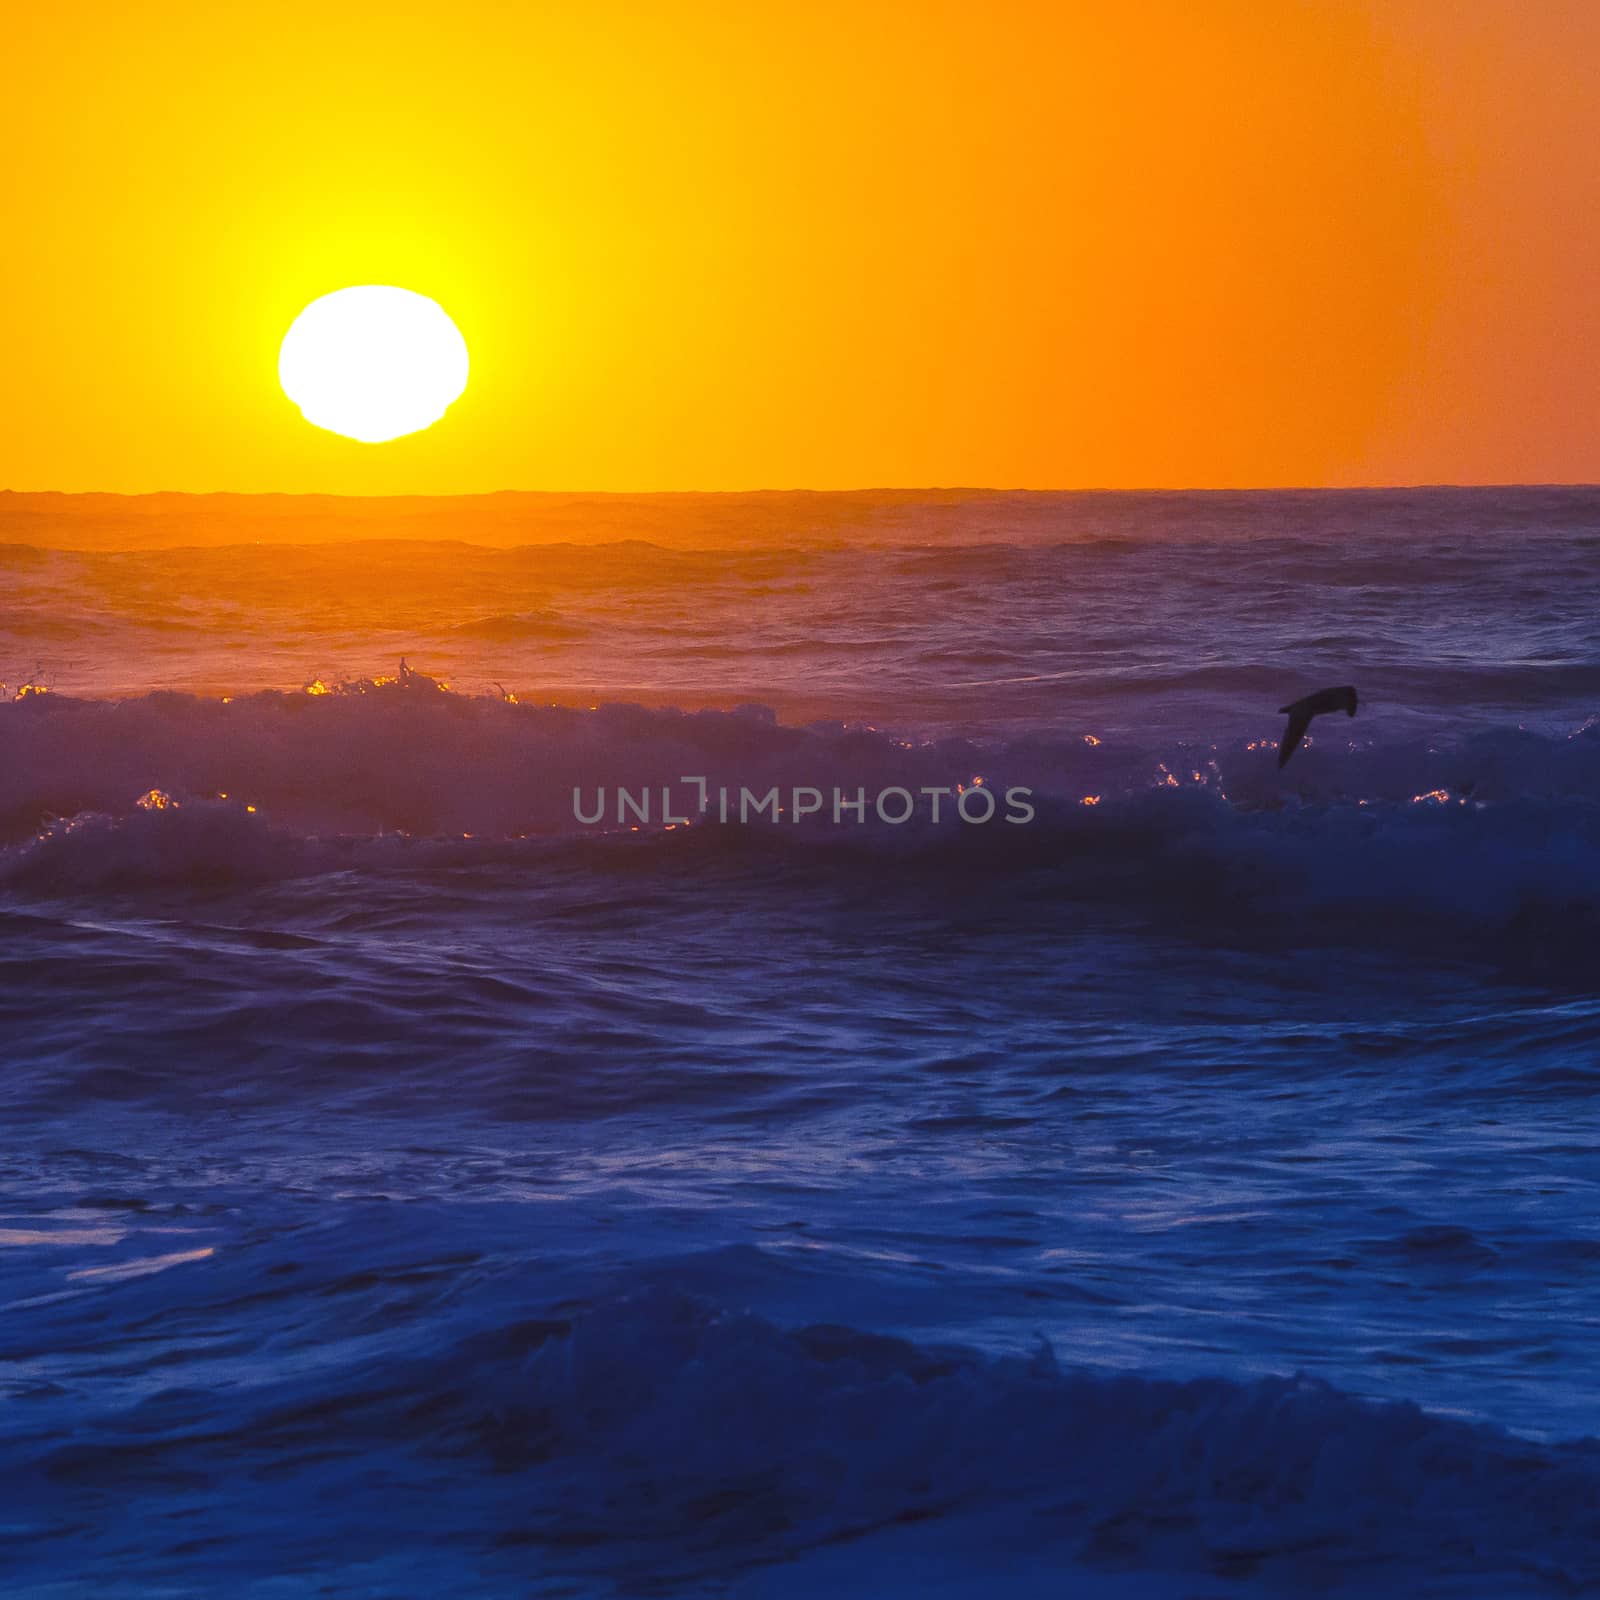 Ocean waves at sunset by Chudakov